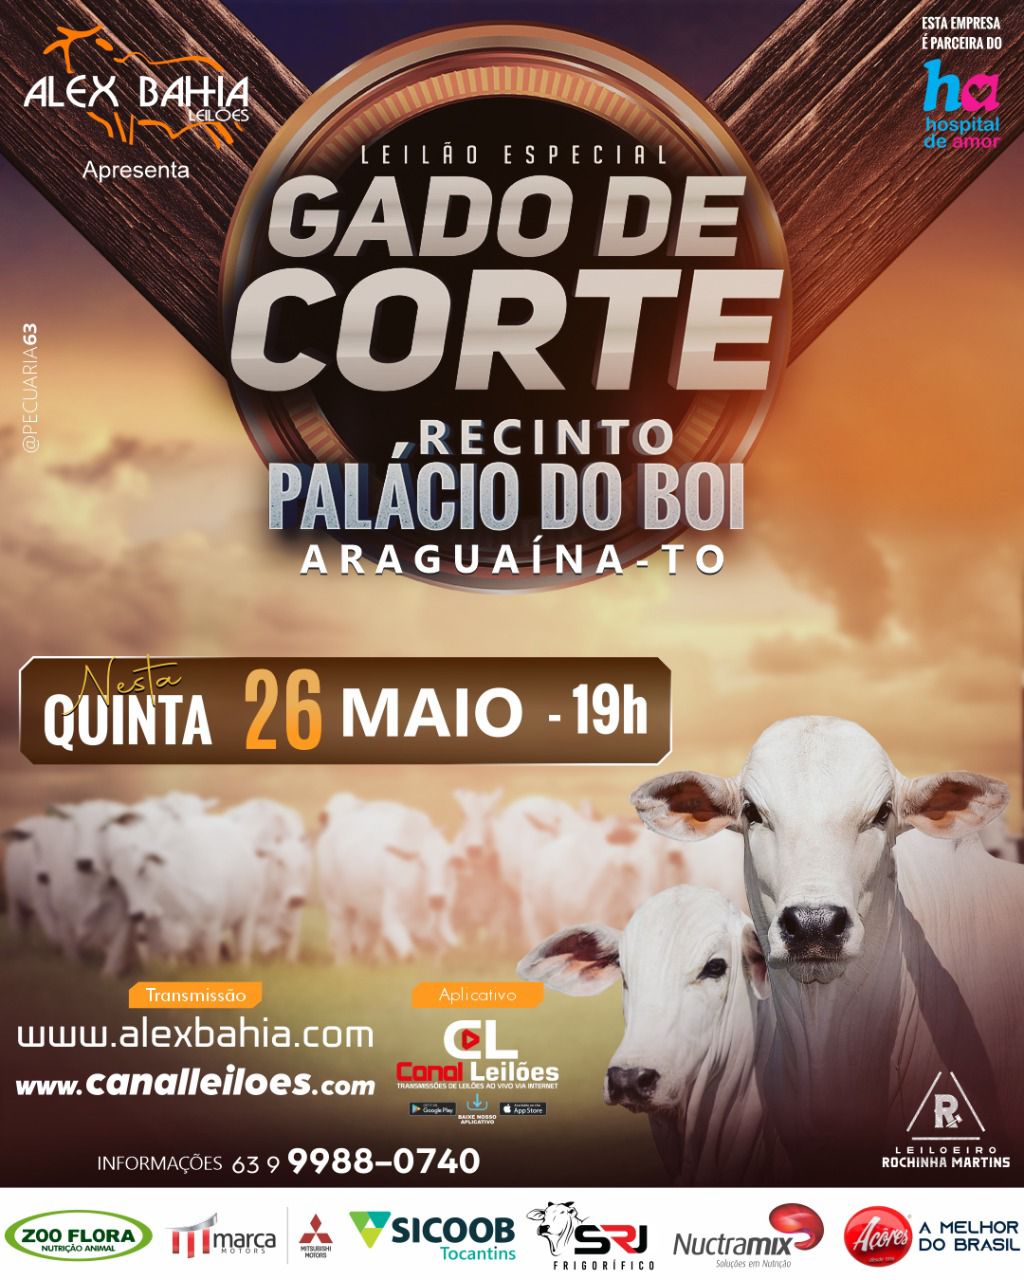 LEILÃO GADO DE CORTE ALEX BAHIA LEILÕES